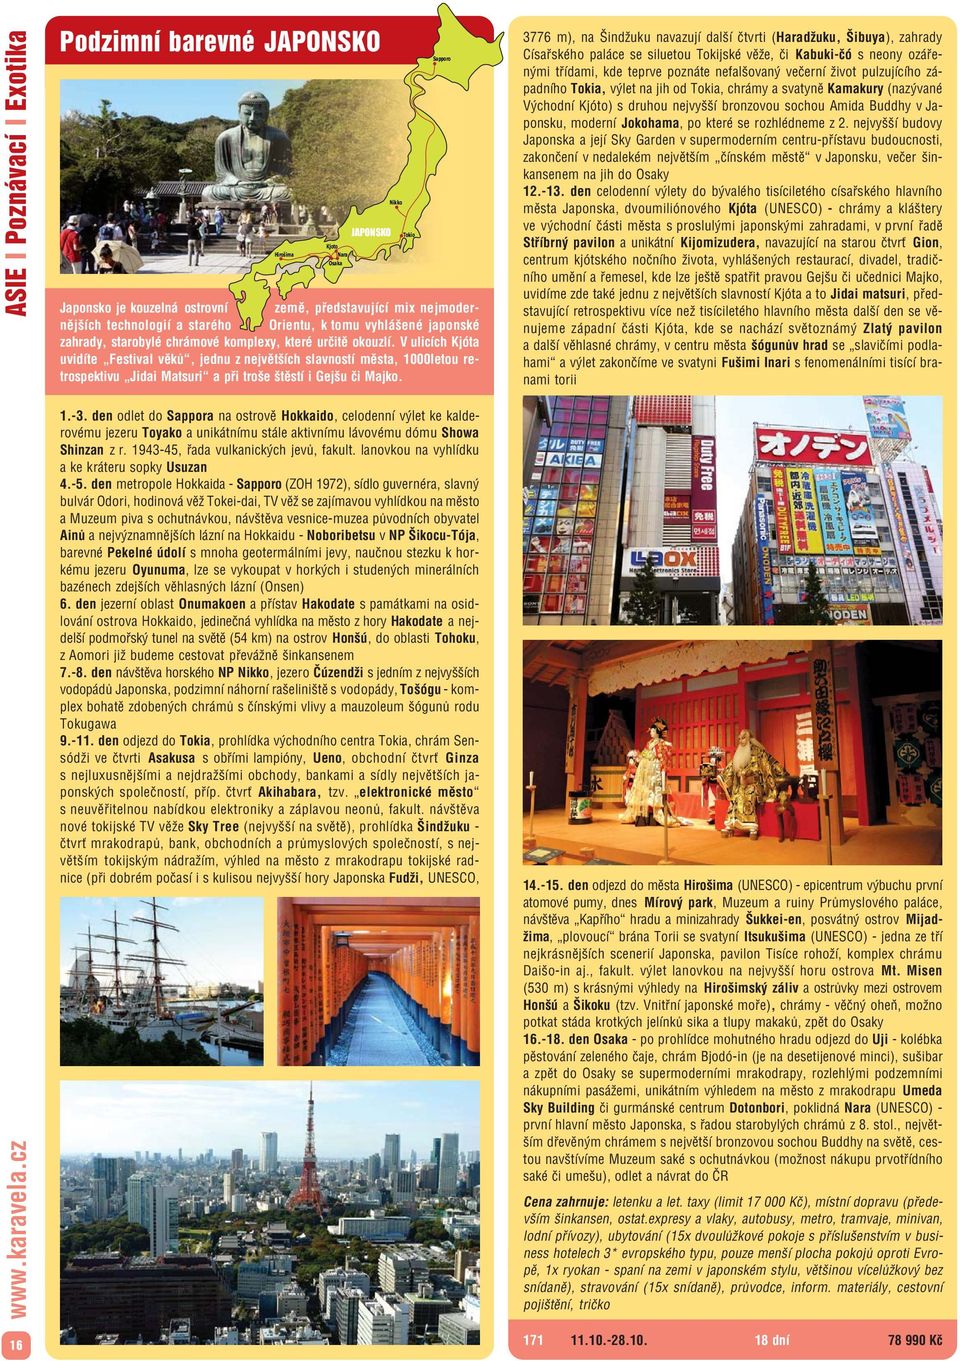 V ulicích Kjóta uvidíte Festival věků, jednu z největších slavností města, 1000letou re trospektivu Jidai Matsuri a při troše štěstí i Gejšu či Majko. 1. 3.